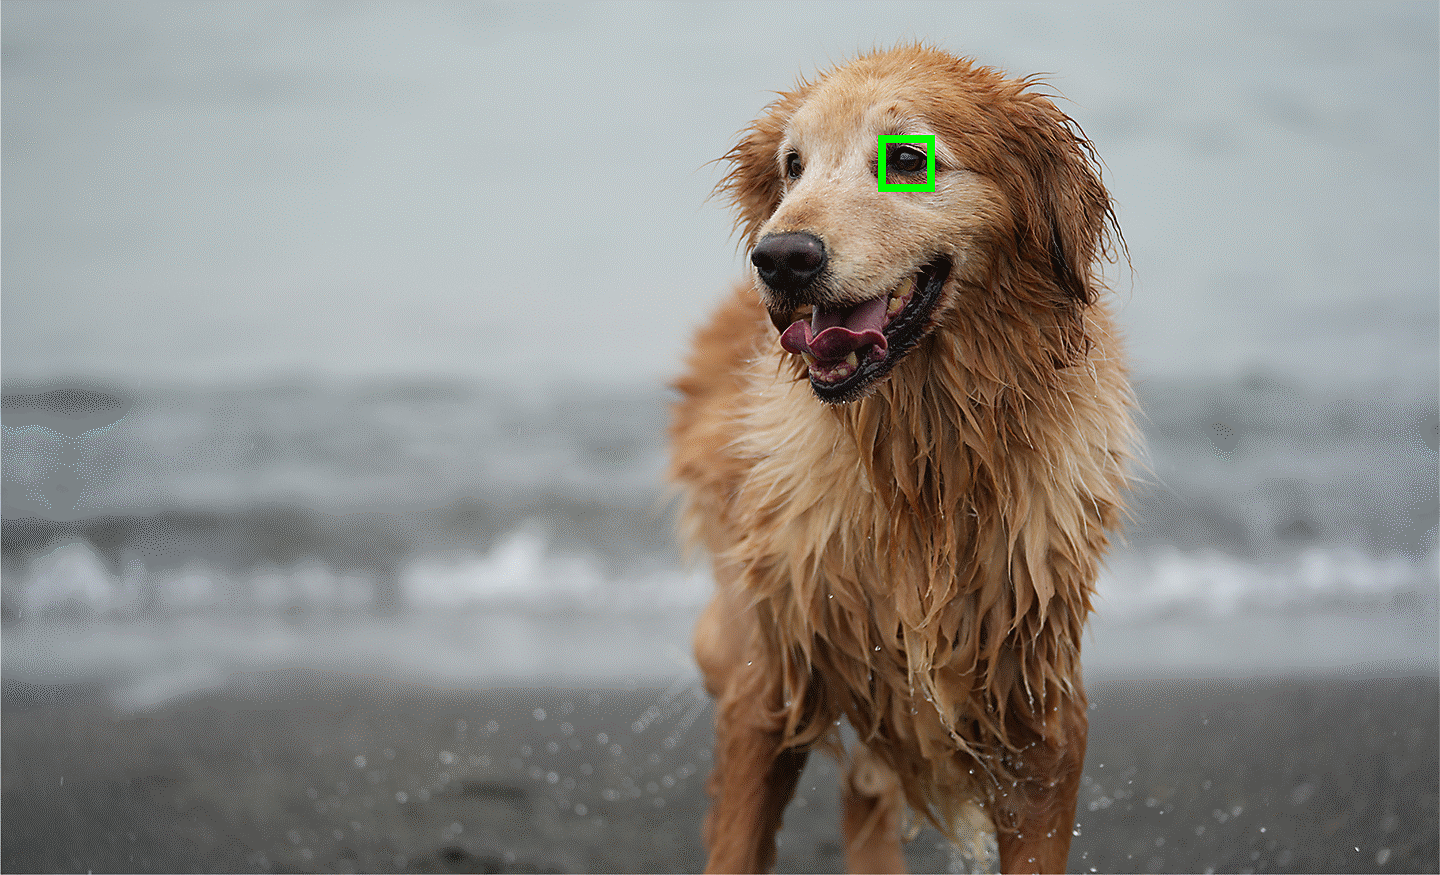 Fotografia ilustrujúca automatické zaostrovanie na oči zvierat v reálnom čase so zaostrením na oči psa